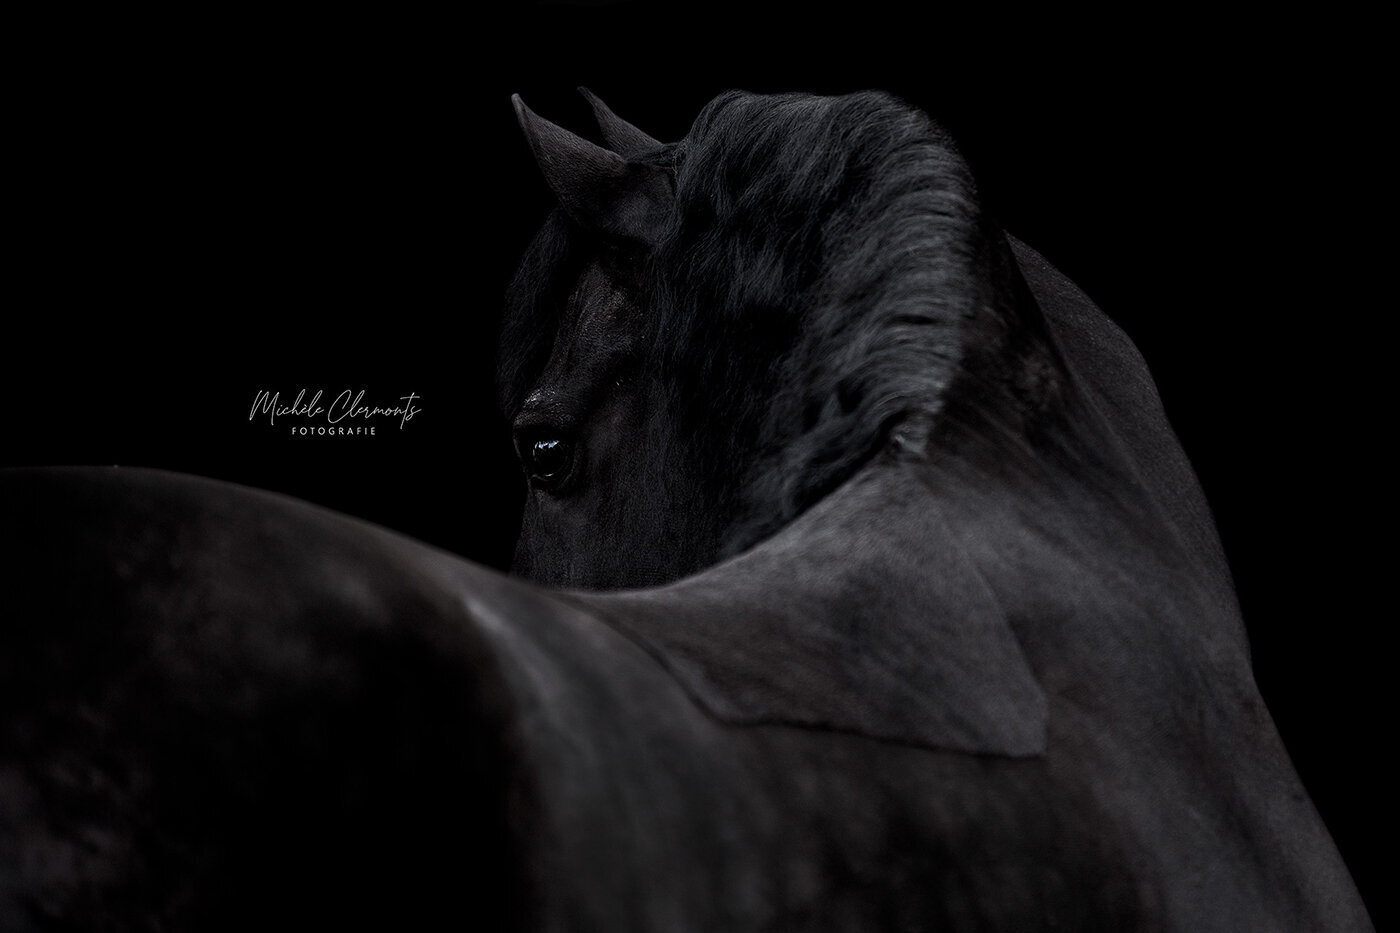 DSC_1289-paardenfotografie-michèle clermonts fotografie-low